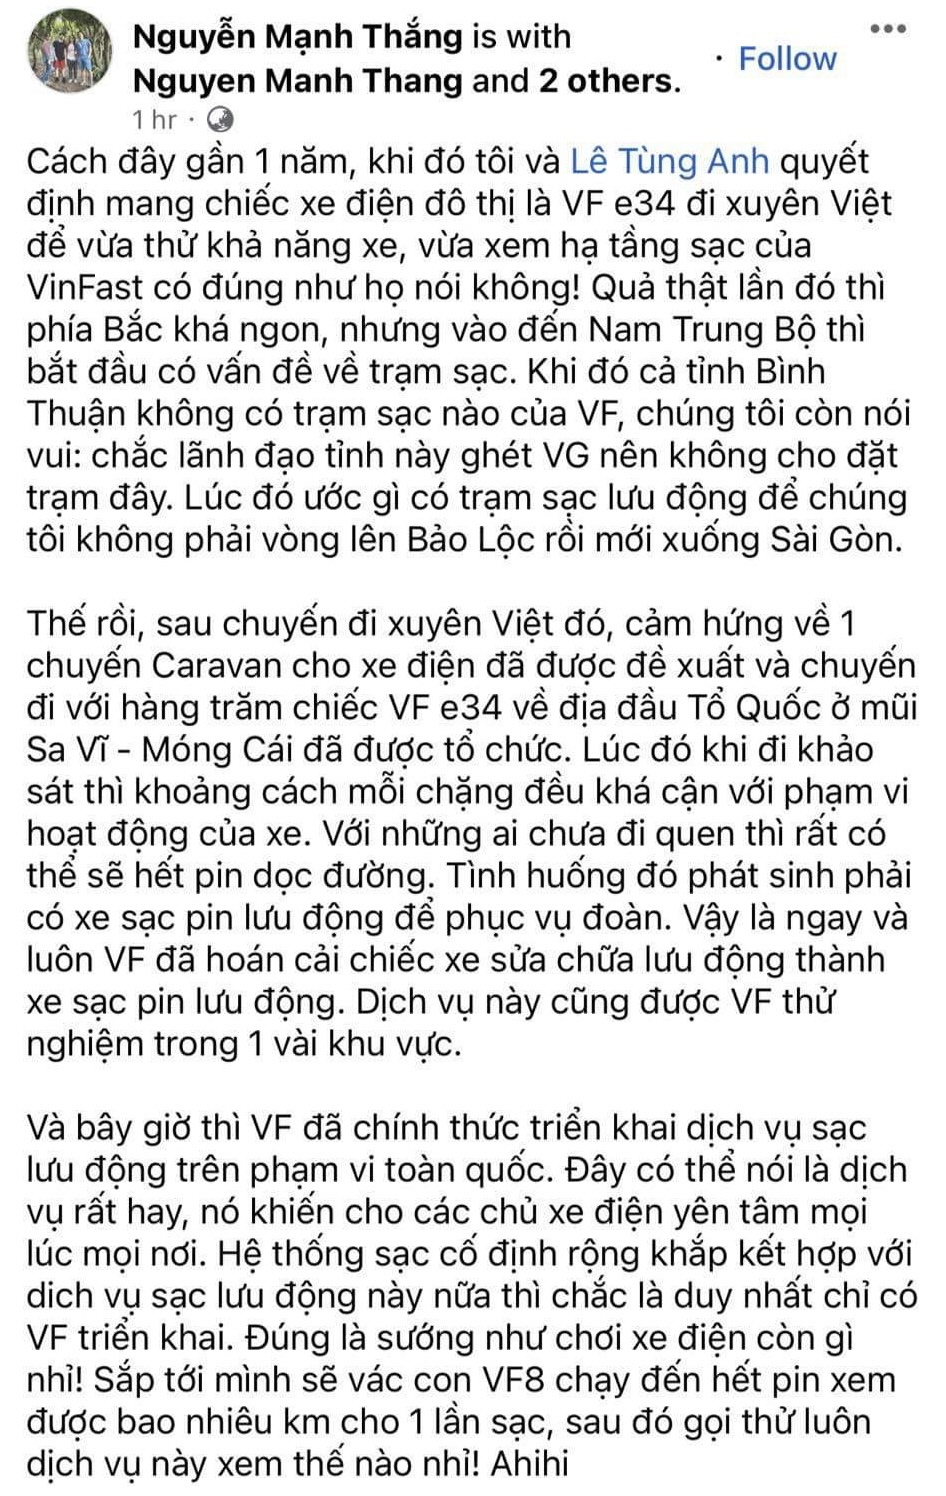 B&agrave;i viết của chuy&ecirc;n gia Nguyễn Mạnh Thắng nhận được nhiều b&igrave;nh luận đồng t&igrave;nh, ủng hộ về hệ sinh th&aacute;i hỗ trợ xe điện của VinFast.